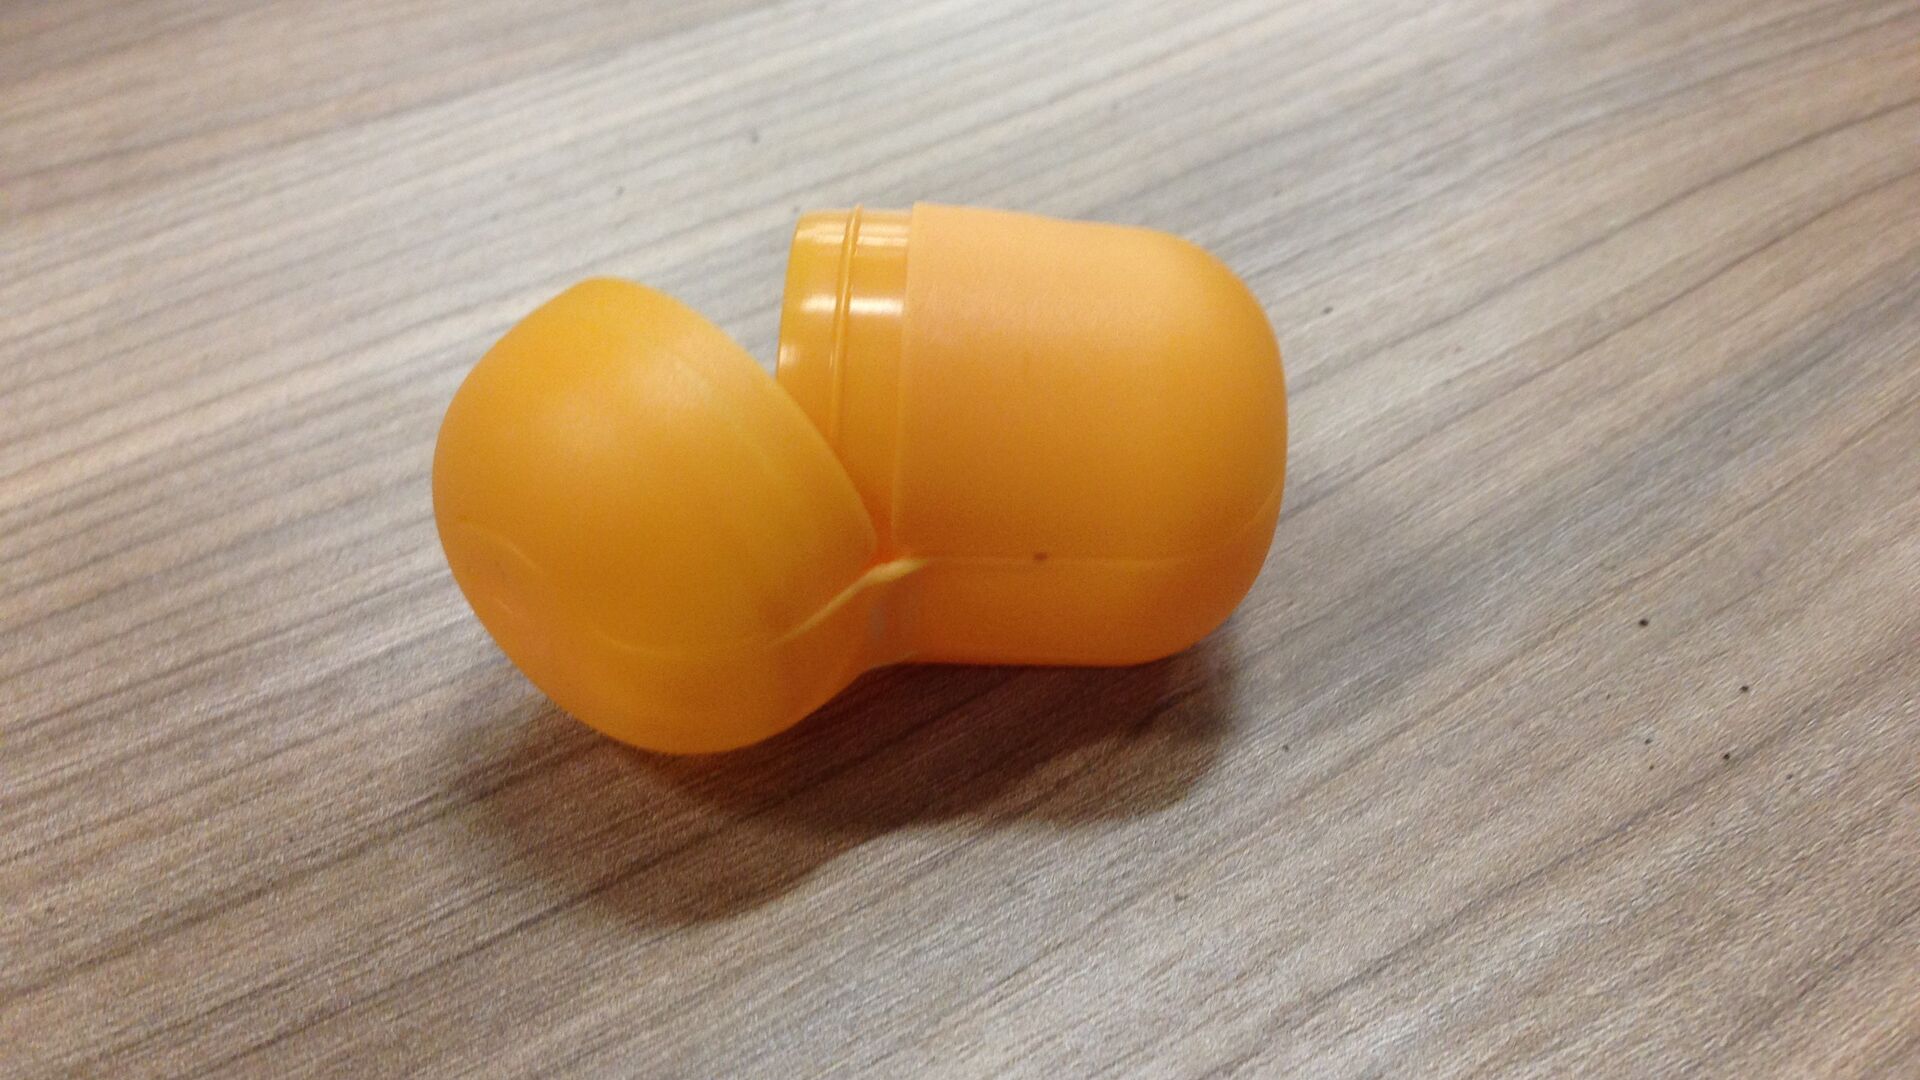 Киндер желтый. Яйцо от Киндер сюрприза. Контейнер от Киндер сюрприза. Пластиковые контейнеры от Киндер сюрпризов. Пластмассовые яйца от Киндер сюрприза.